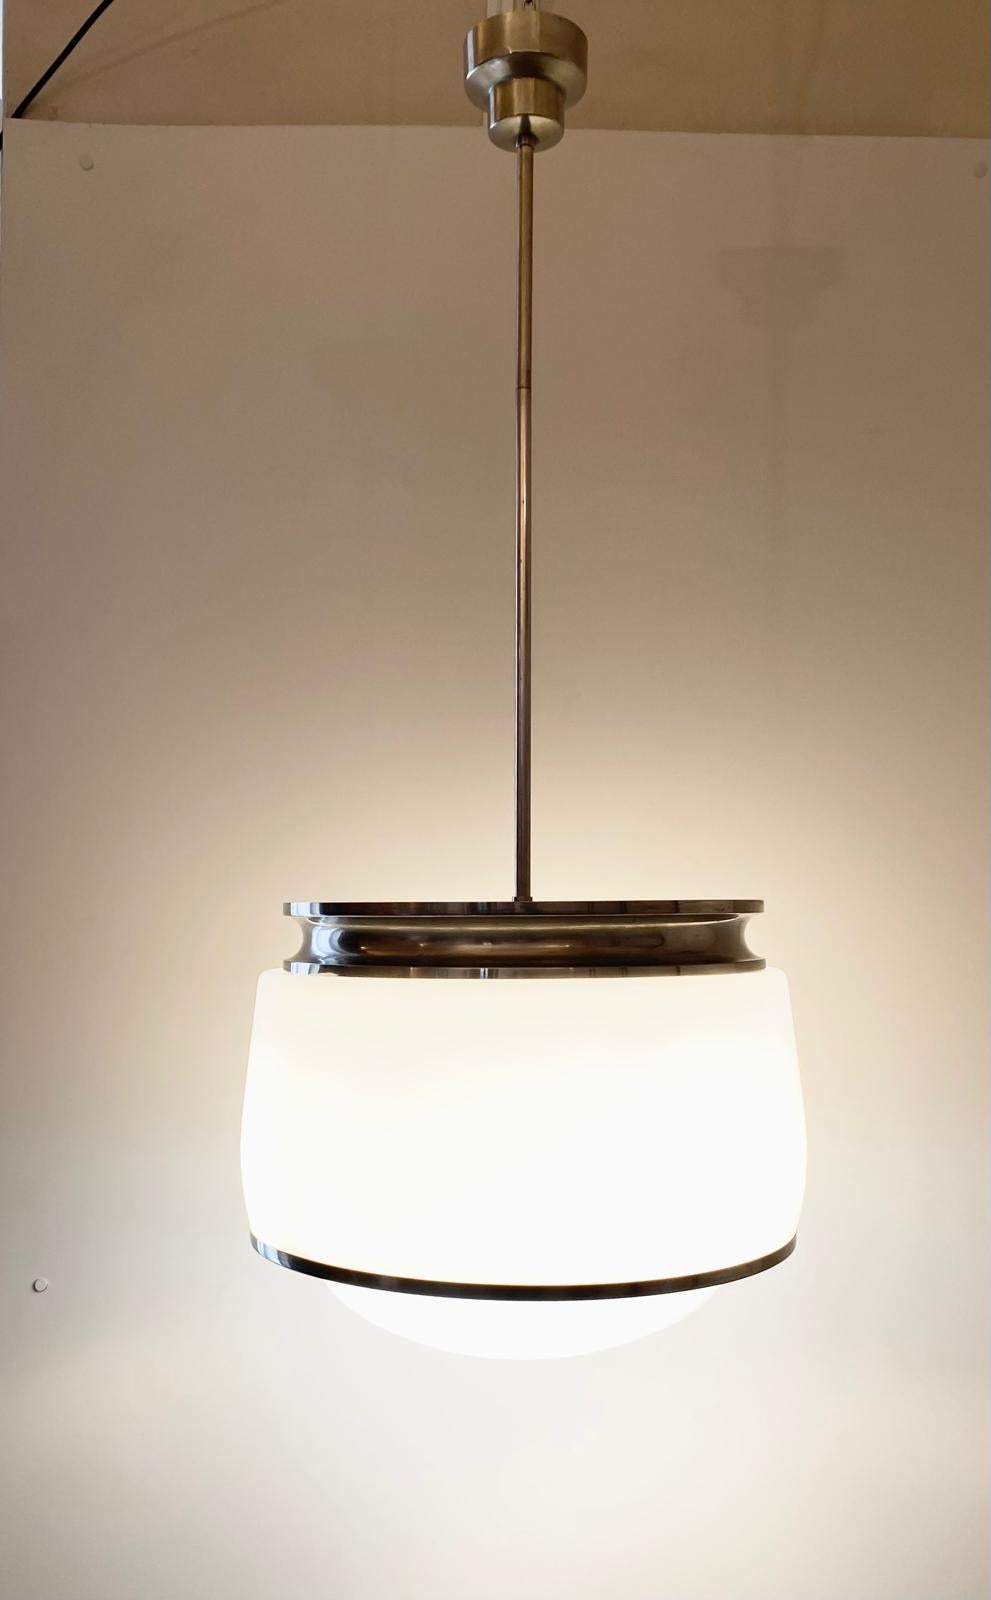 Suspension italienne Kappa de Sergio Mazza Artemide, 1960
Rare lampe à suspension en laiton nickelé mat, conçue par Sergio Mazza pour Artemide, datant de 1960. Abat-jour supérieur en verre opale blanc et abat-jour inférieur en cristal pressé, avec